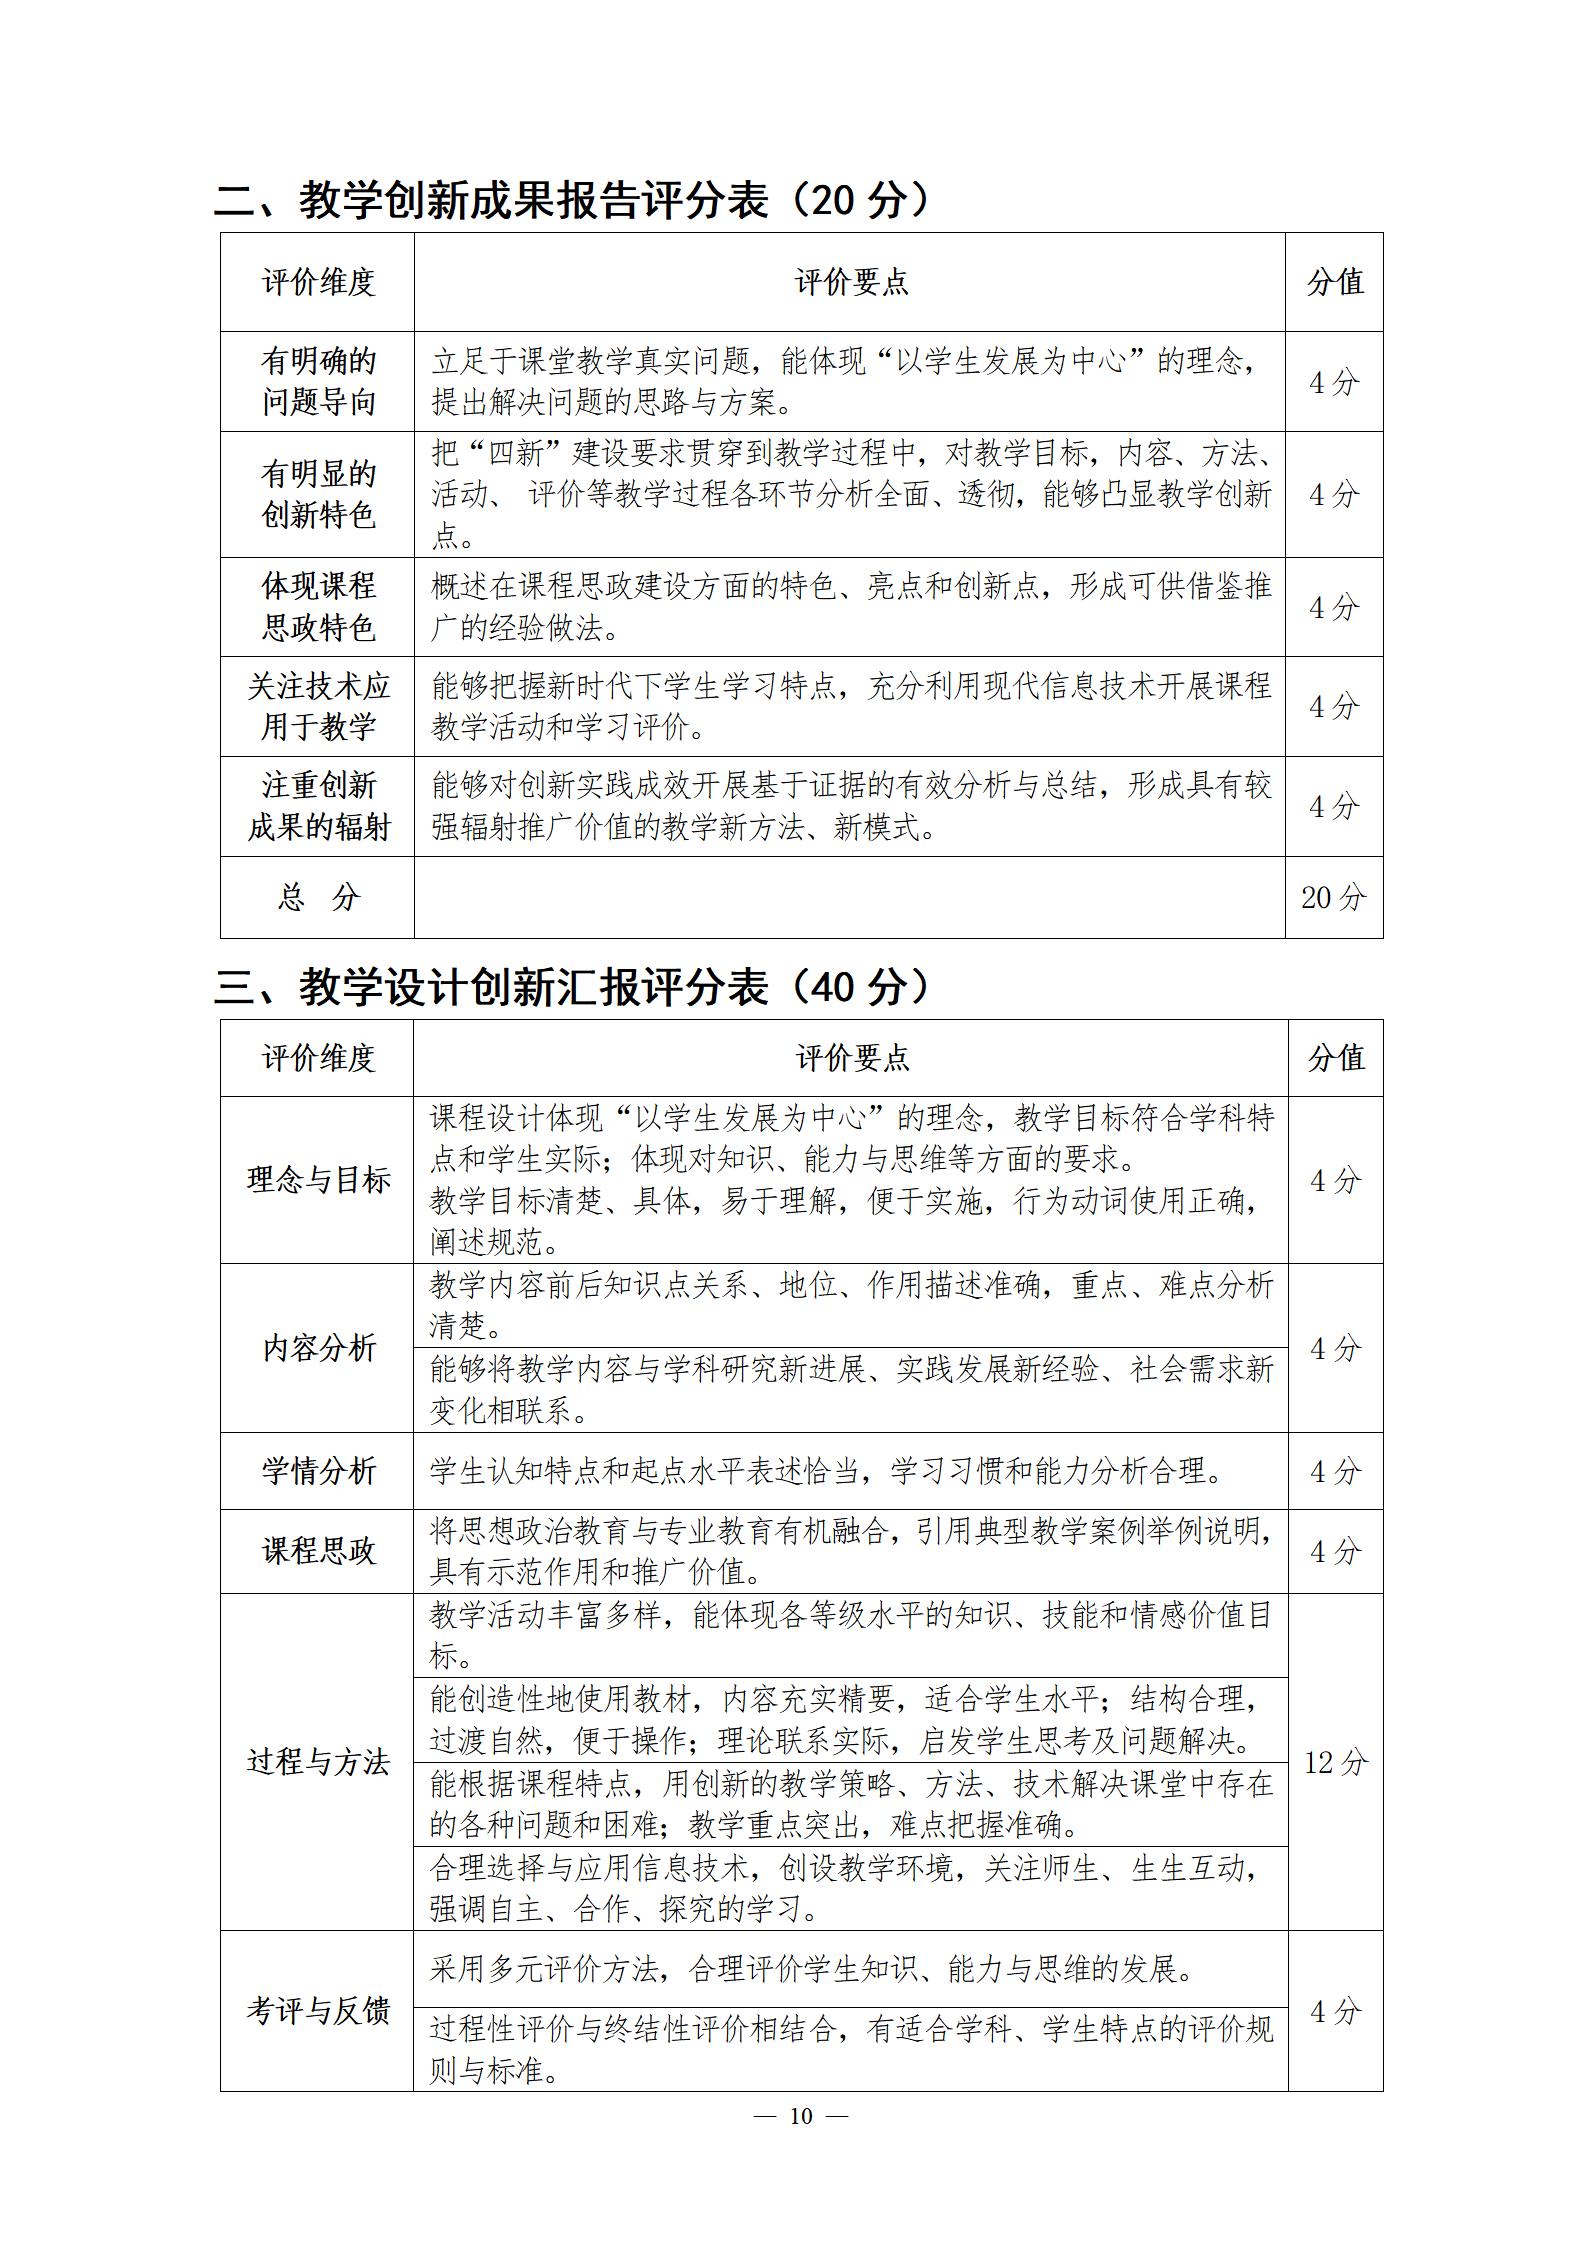 关于举办第四届湖北省高校教师教学创新大赛的通知_10.jpg